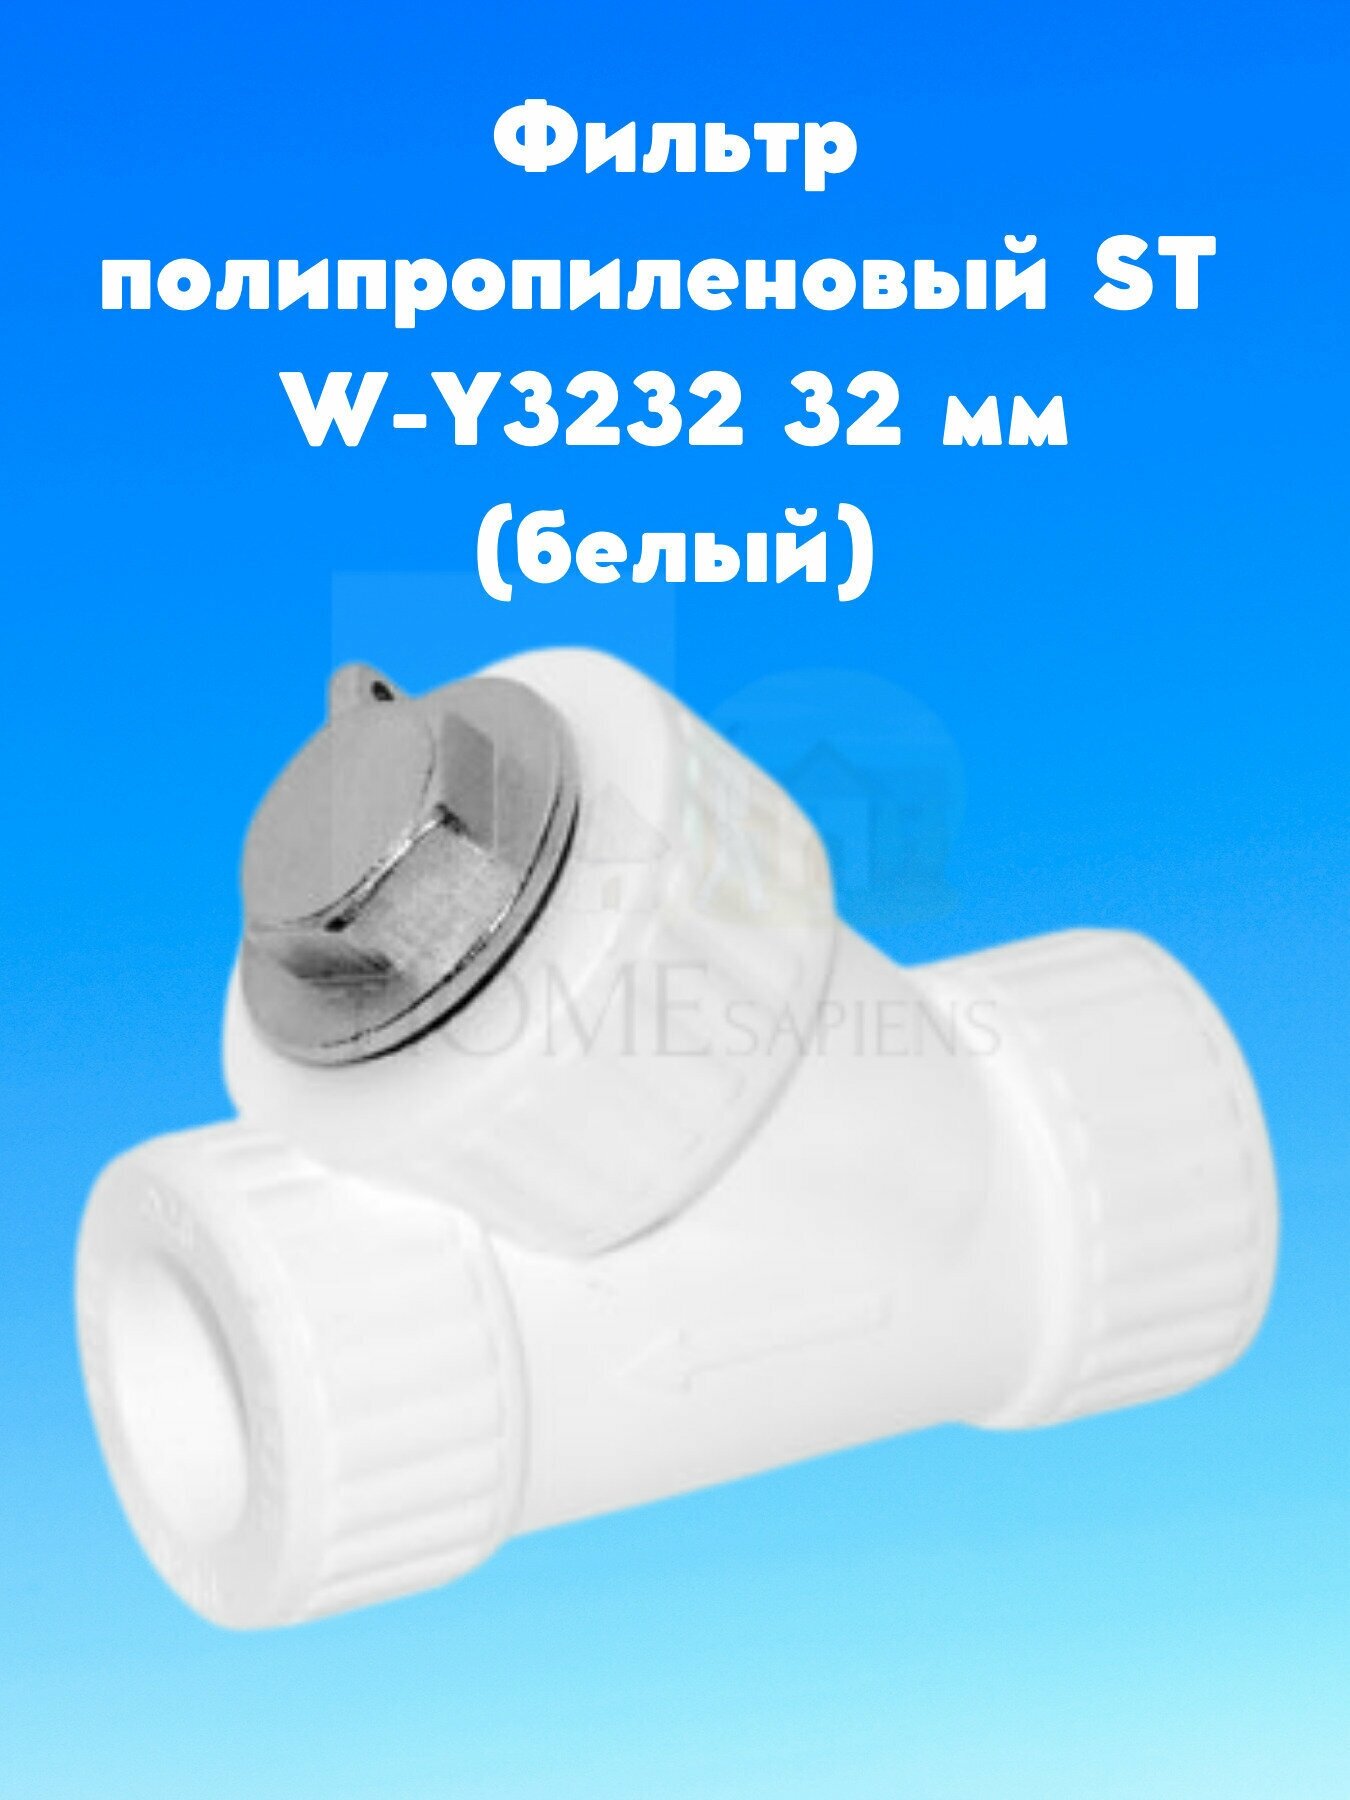 Фильтр полипропиленовый ST W-Y3232 32 мм (белый), переходник PPR полипропилен комплект сантехнический, фитинги для водопровода, для труб водоснабжения